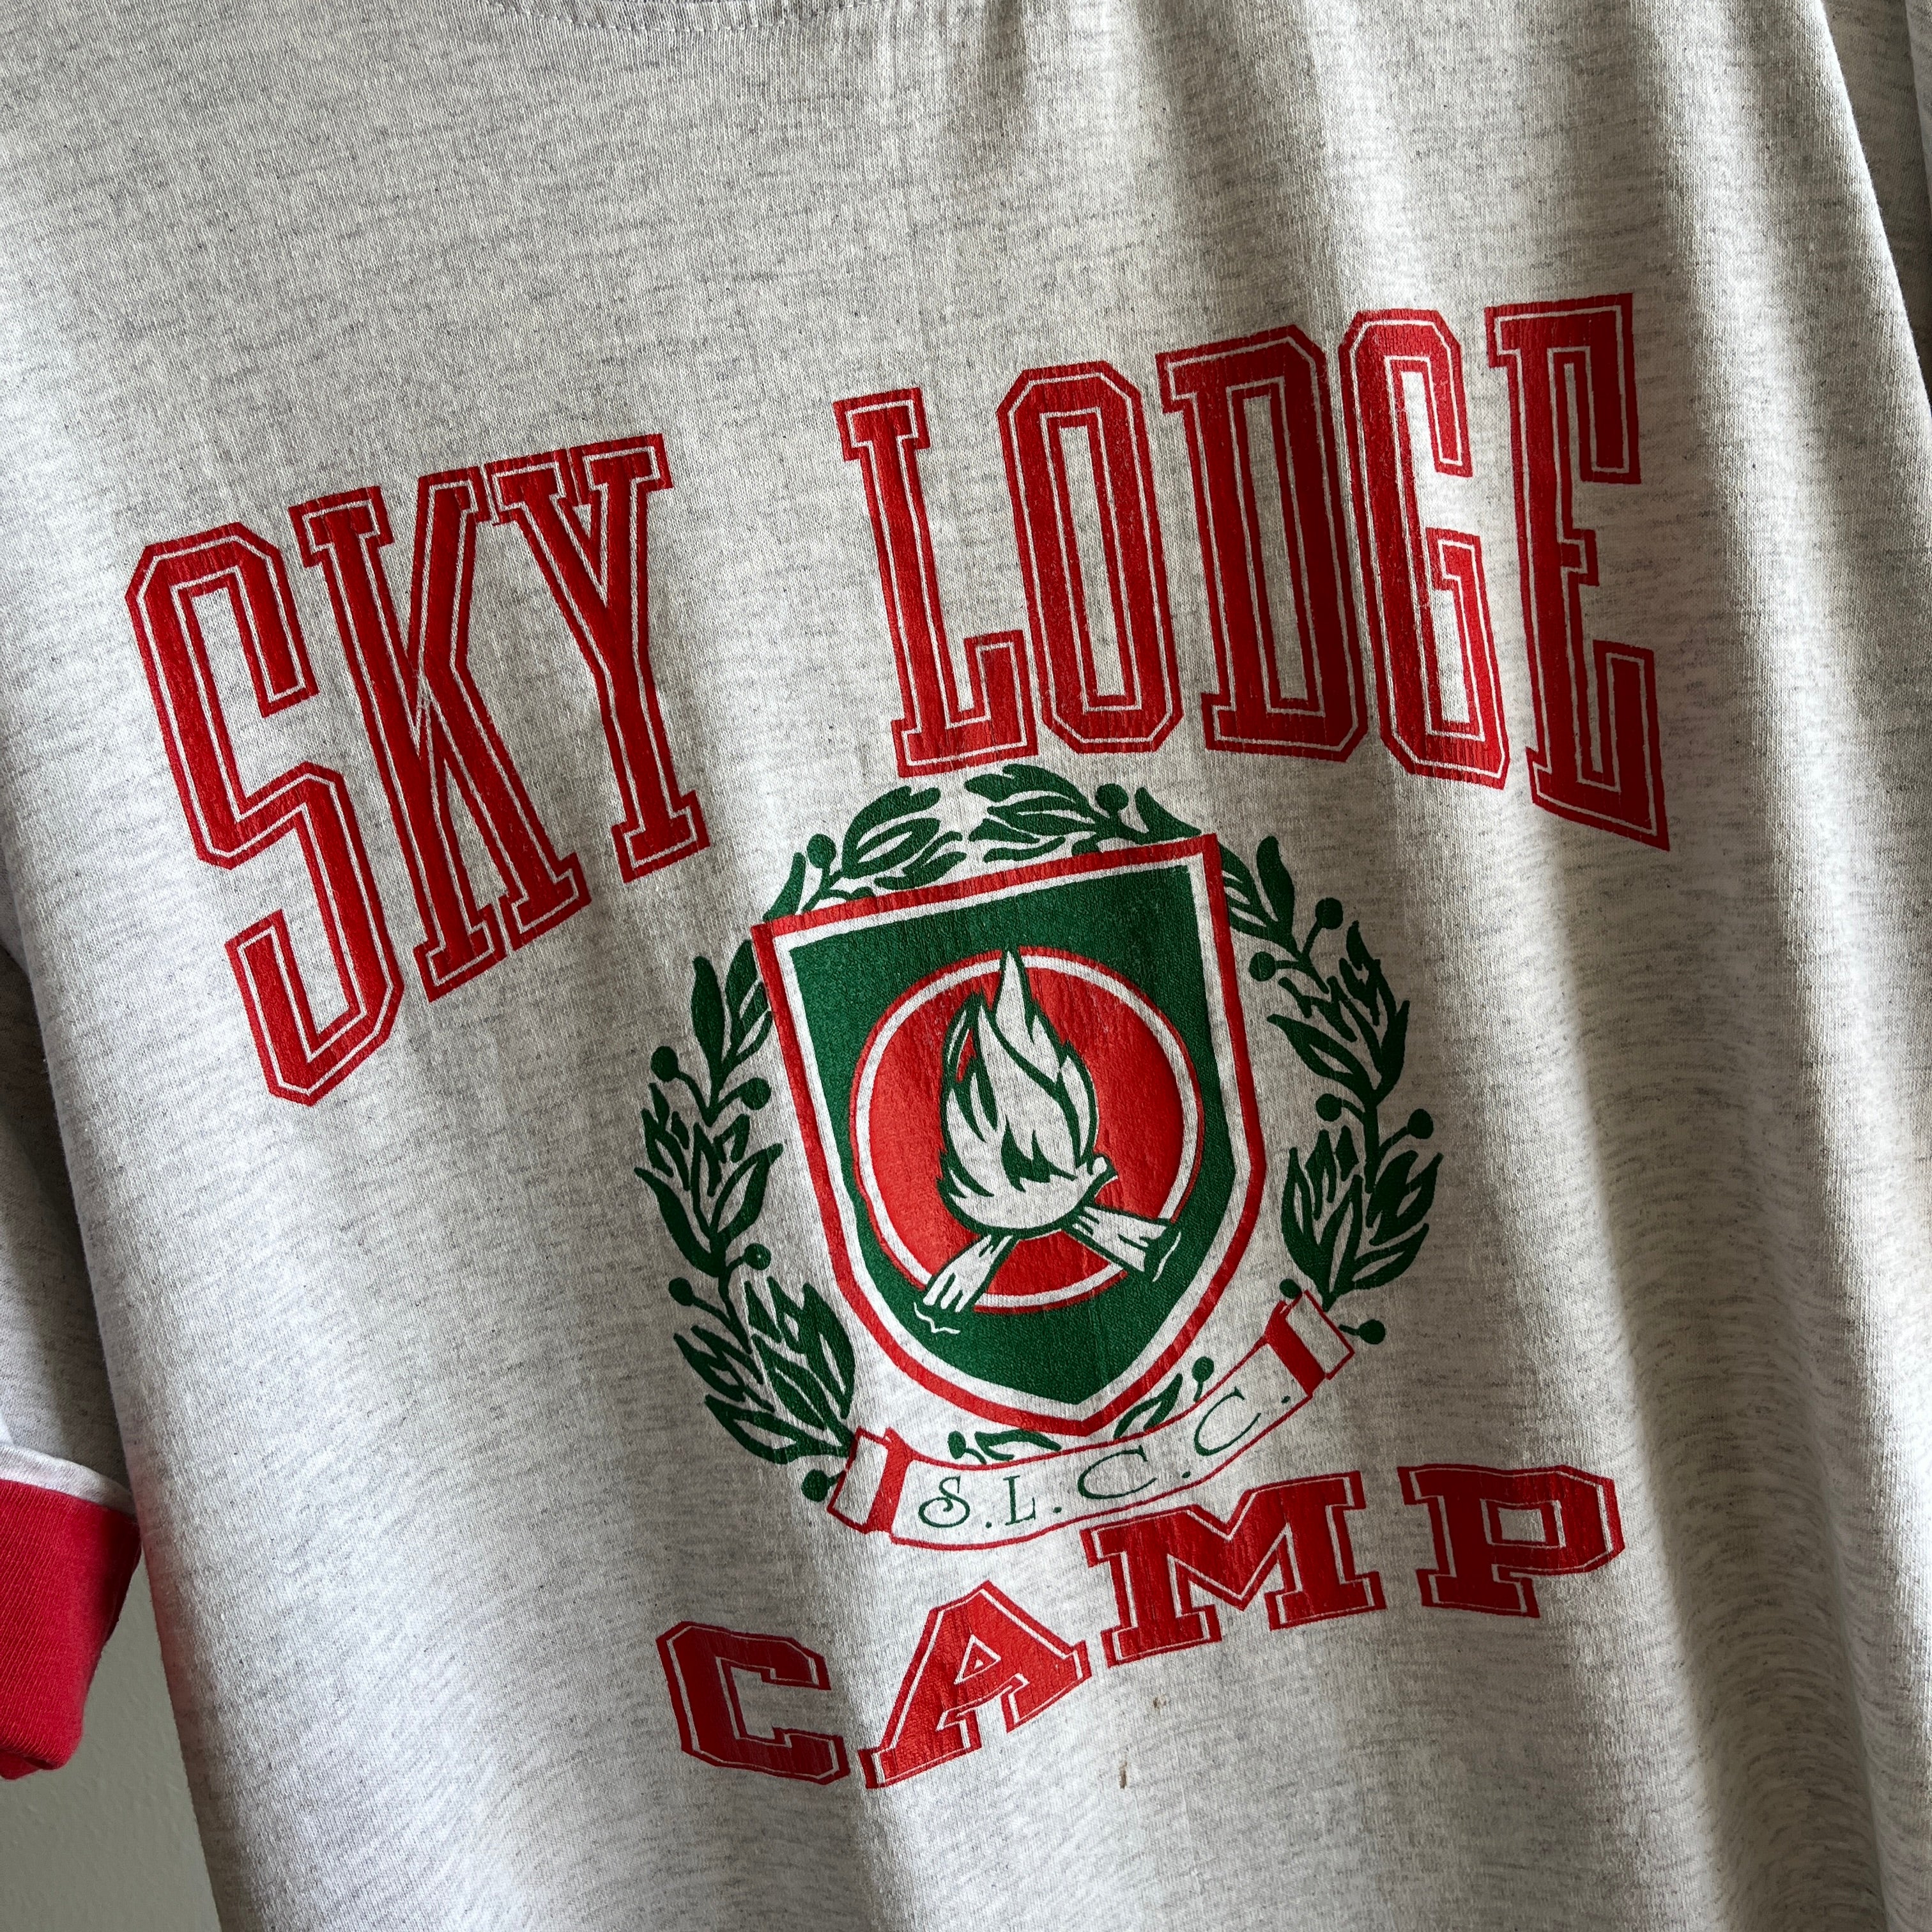 T-shirt bicolore Sky Lodge Camp des années 1990